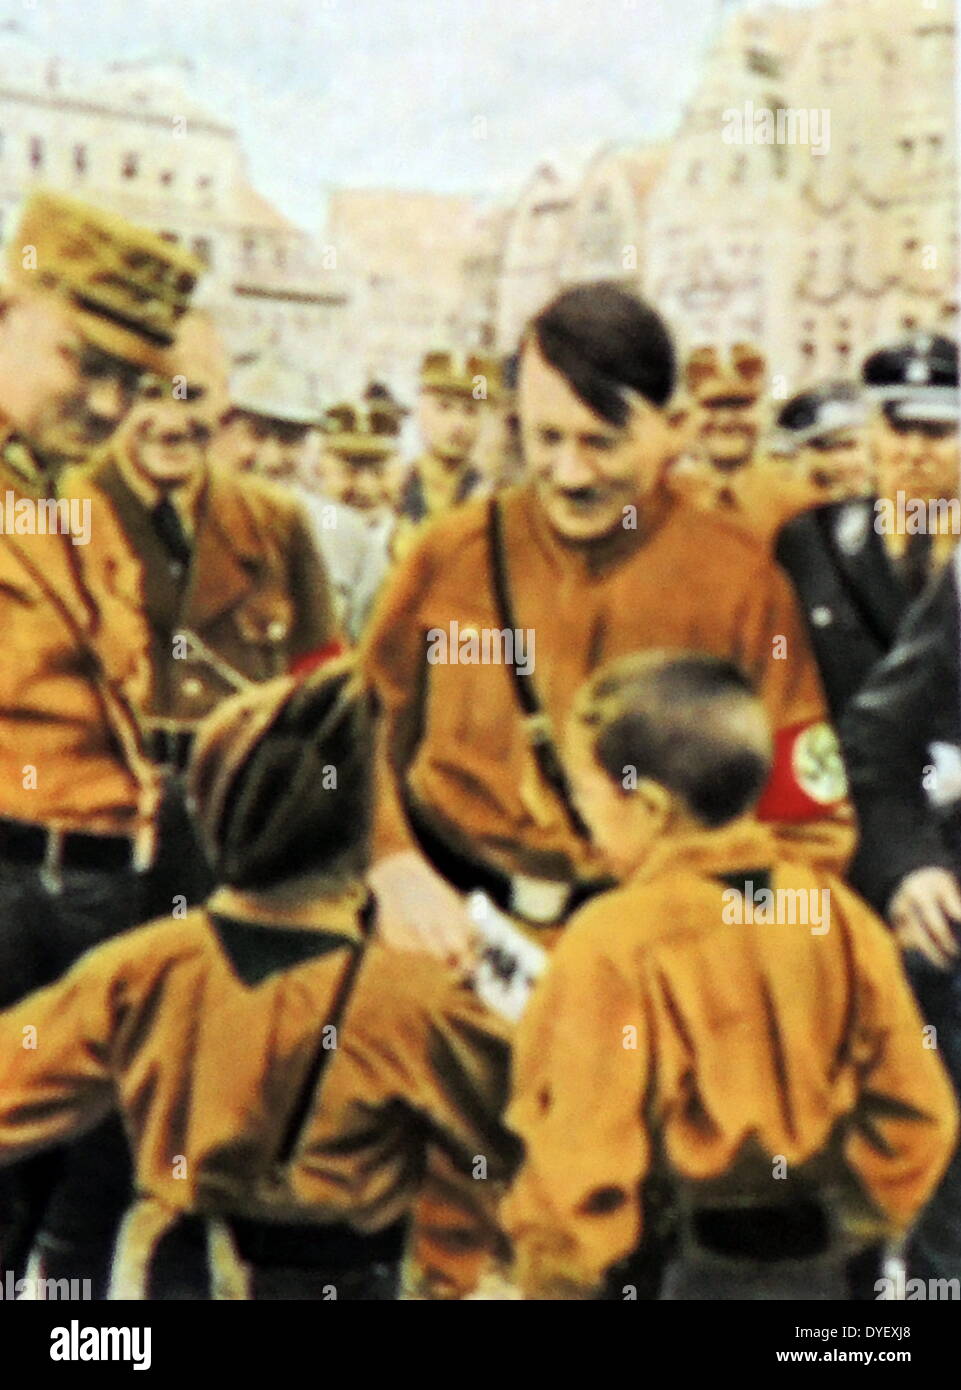 Hitler mit bewundernden Fans. Diese Fotos wurden genommen, der Vater der Nation Status von Adolf Hitler zu erhöhen, nachdem er Bundeskanzler der Bundesrepublik Deutschland wurde im Jahre 1933. Rudolf Hess der Stellvertretende Fuhrer auf der rechten Seite angezeigt wird. Stockfoto